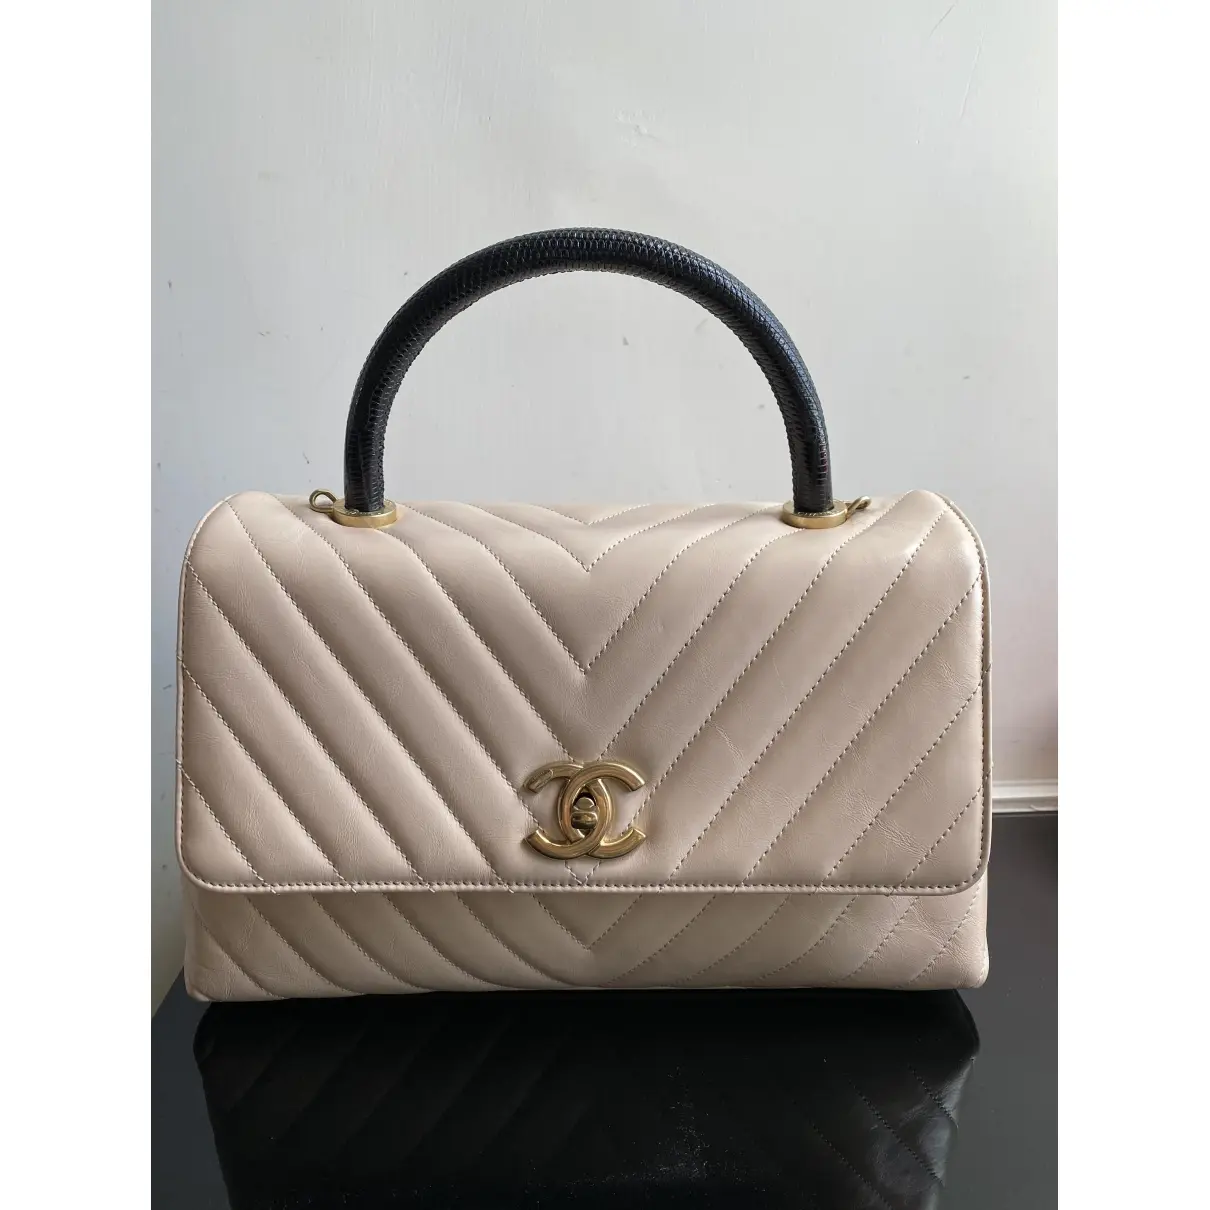 Chanel Coco Handle lizard handbag for sale